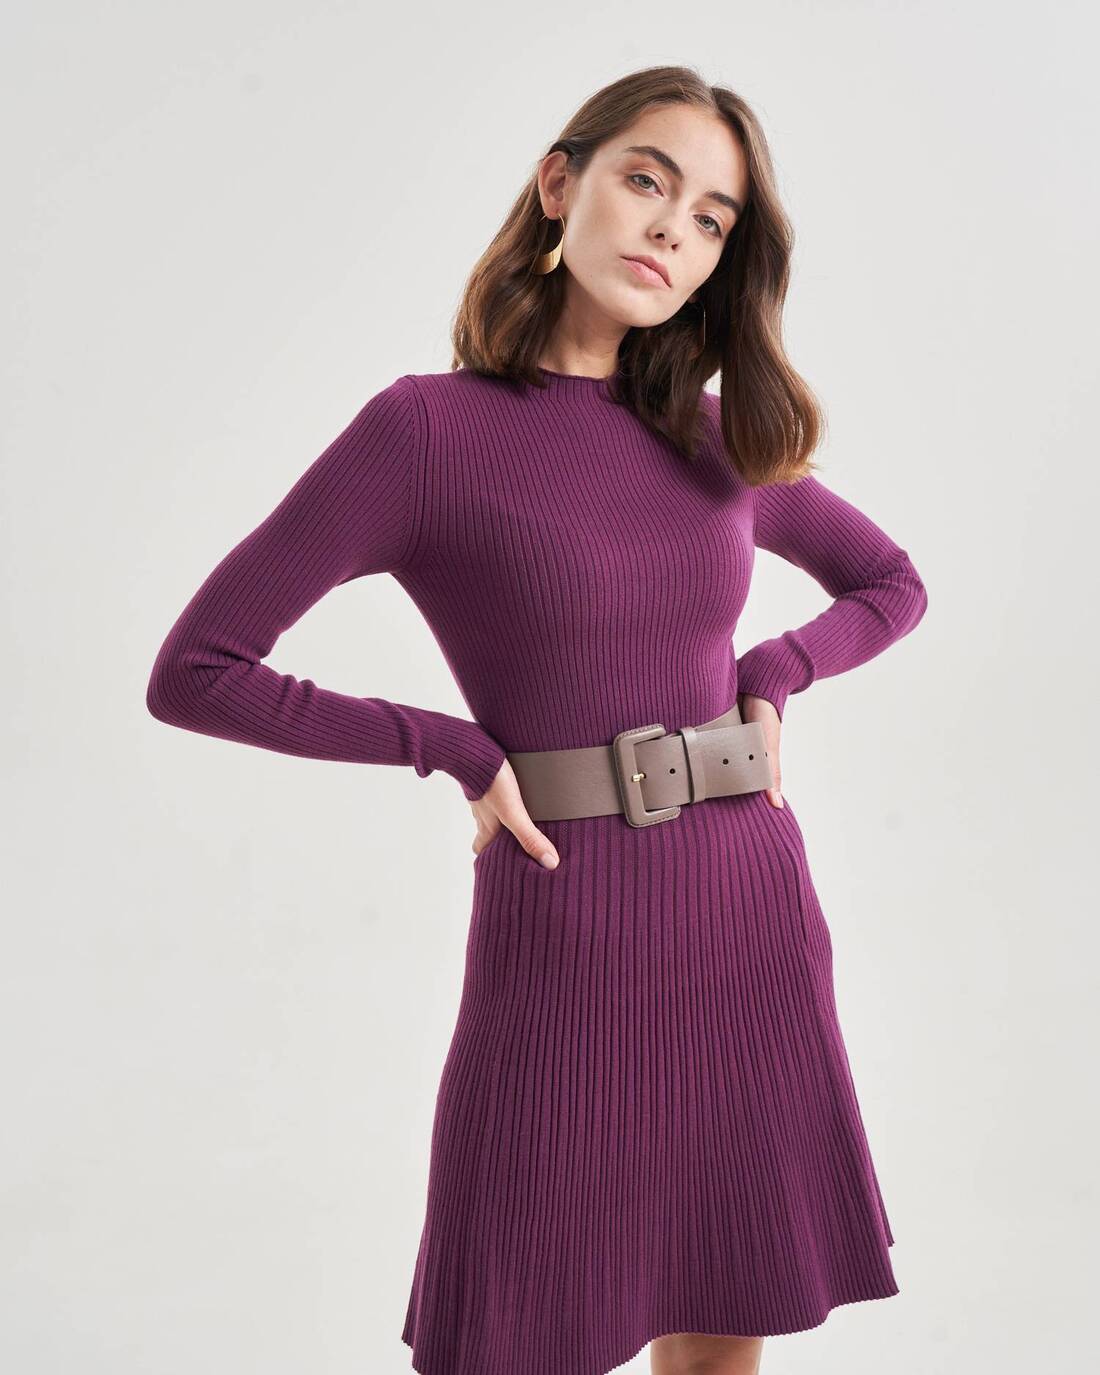 Knit mini dress